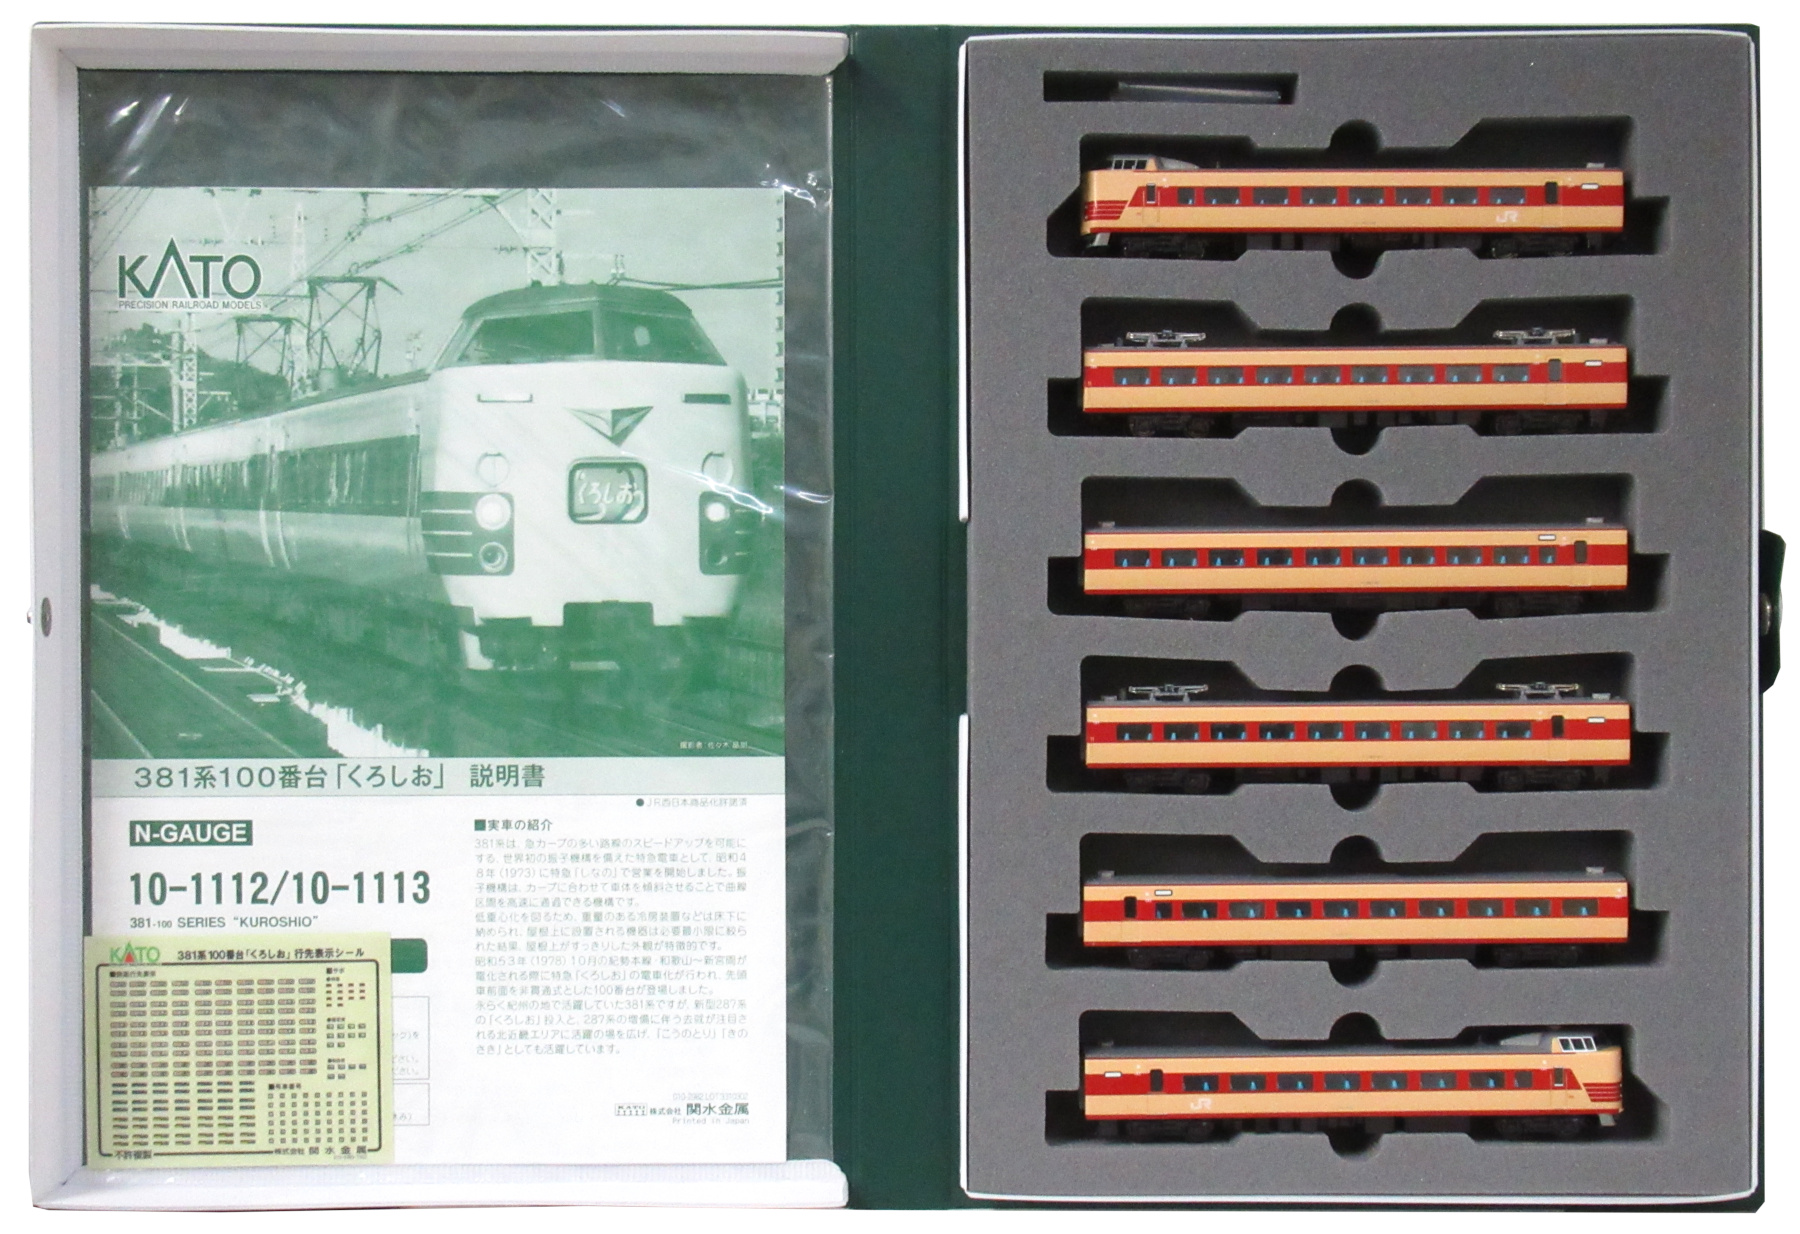 公式]鉄道模型(10-1112+10-1113381系100番台「くろしお」基本+増結 9両 ...